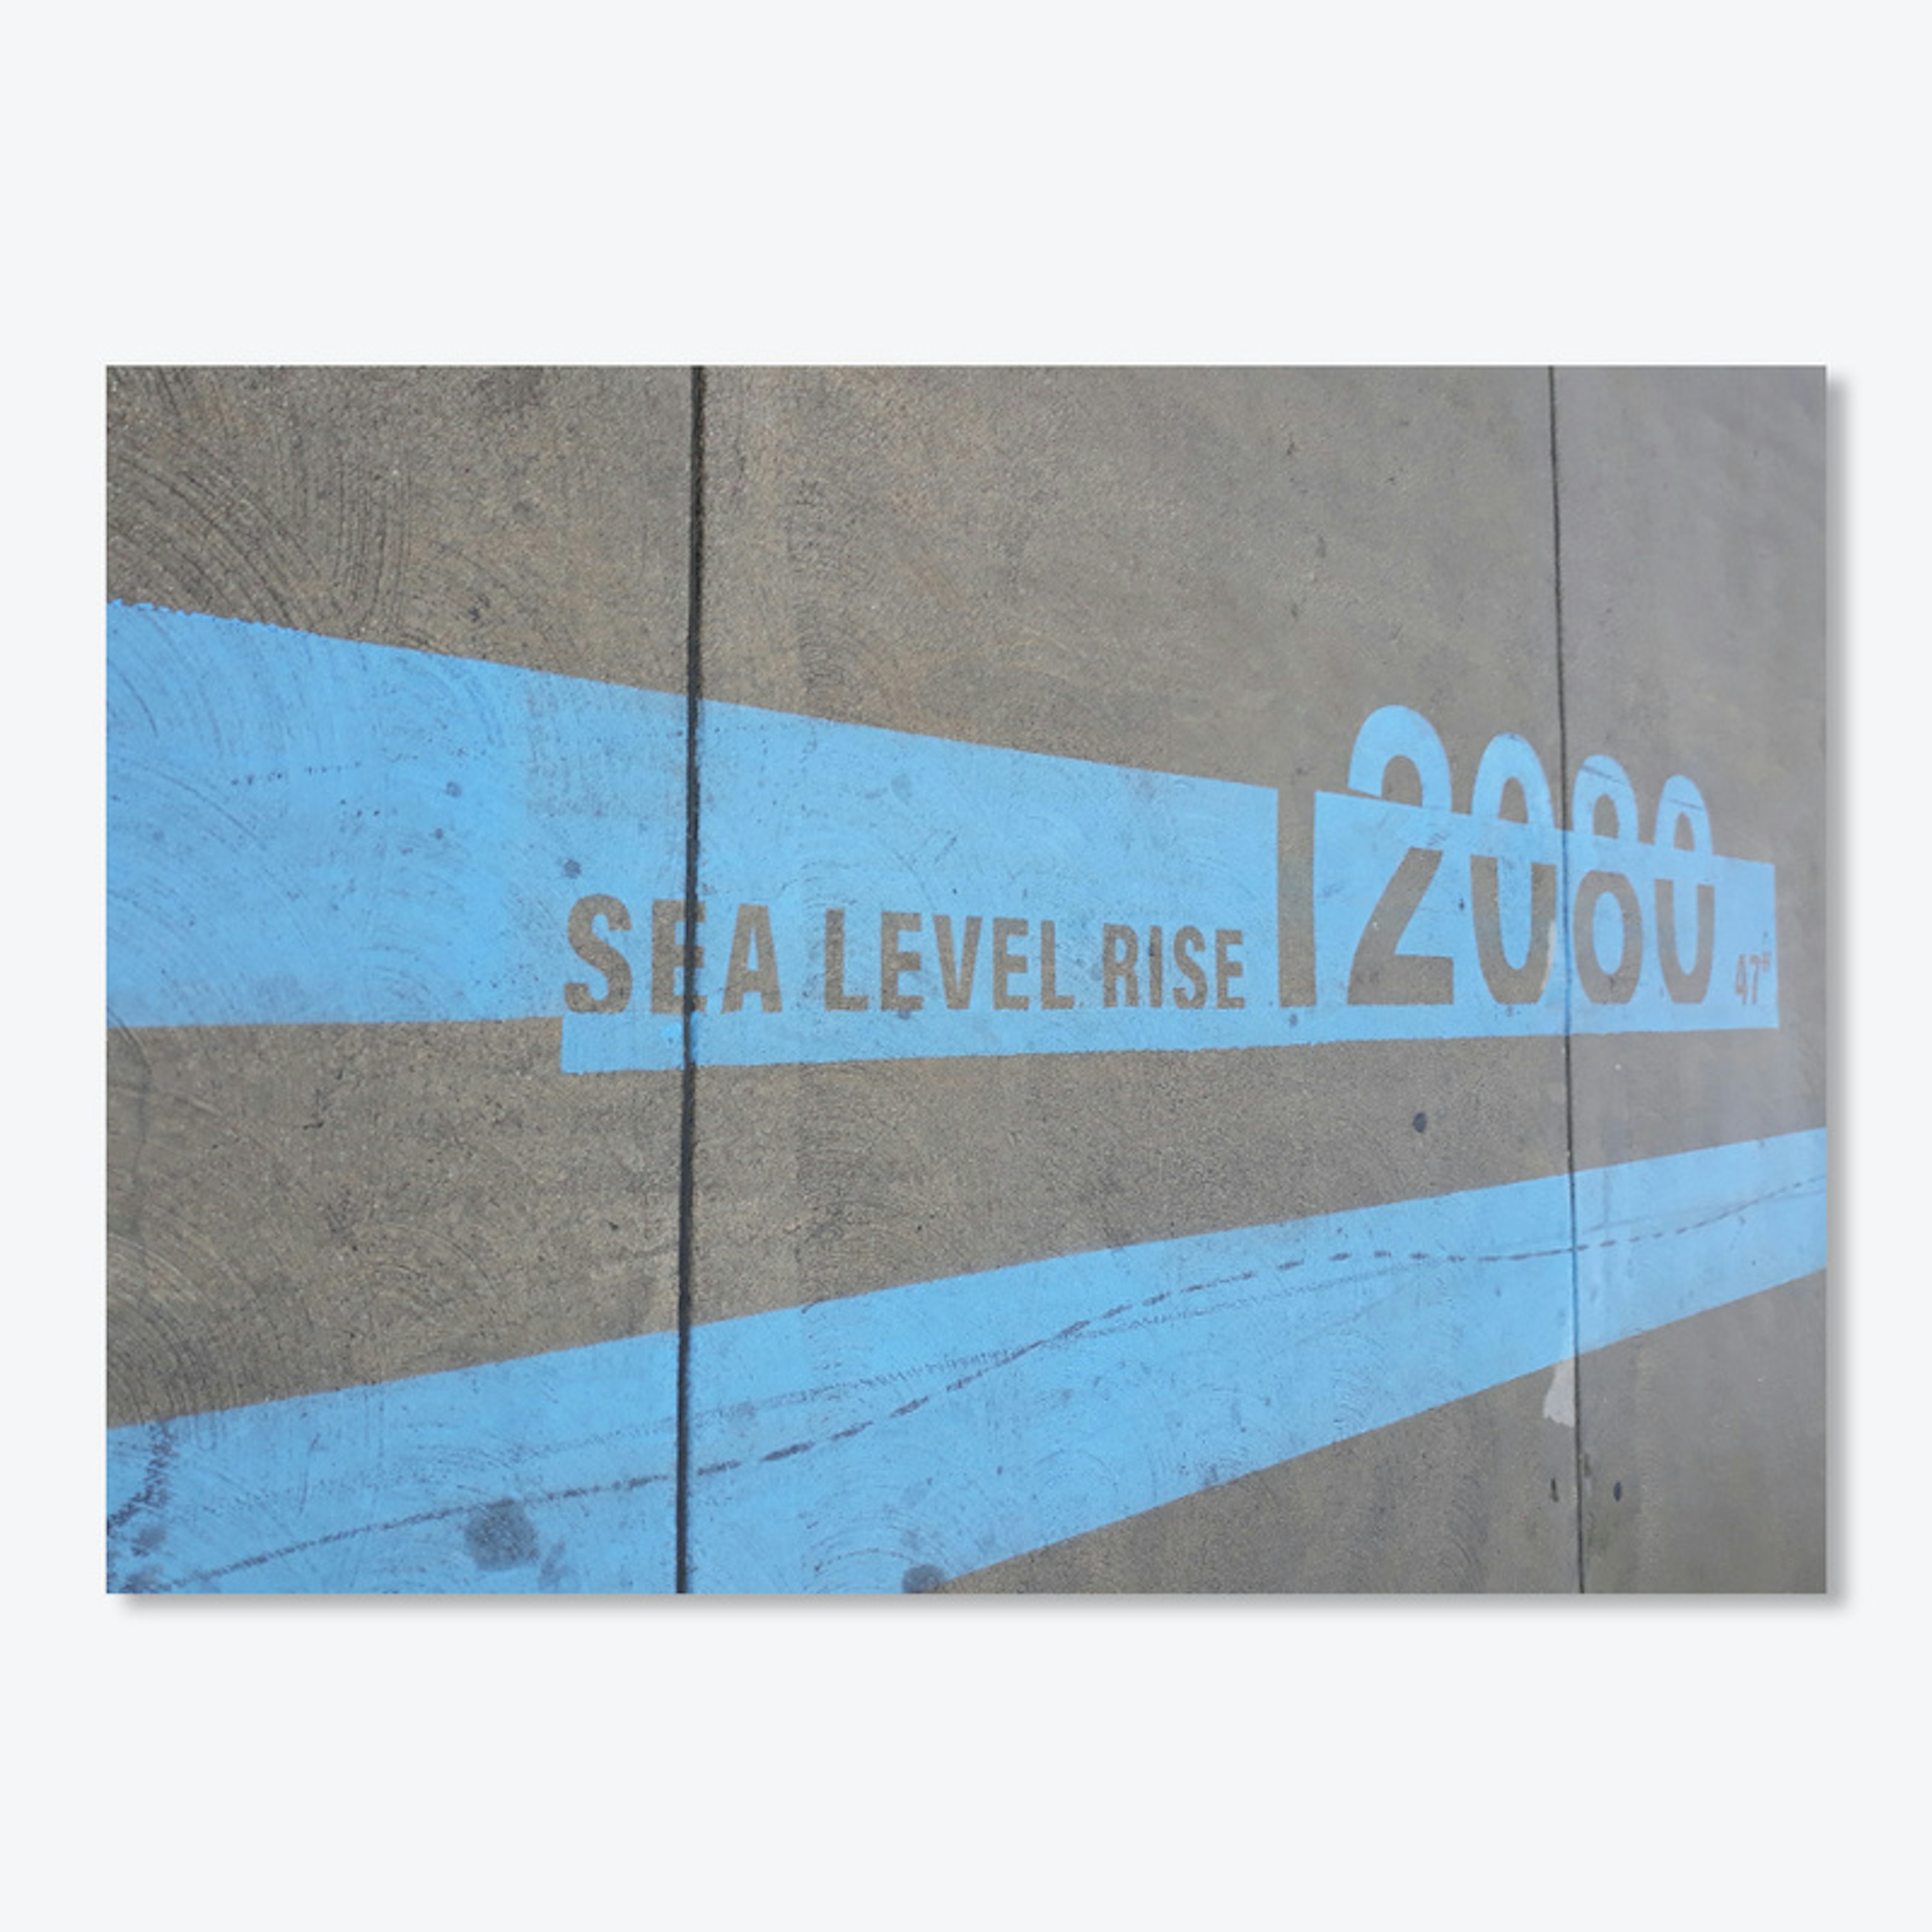 Sea Level Rise 2000